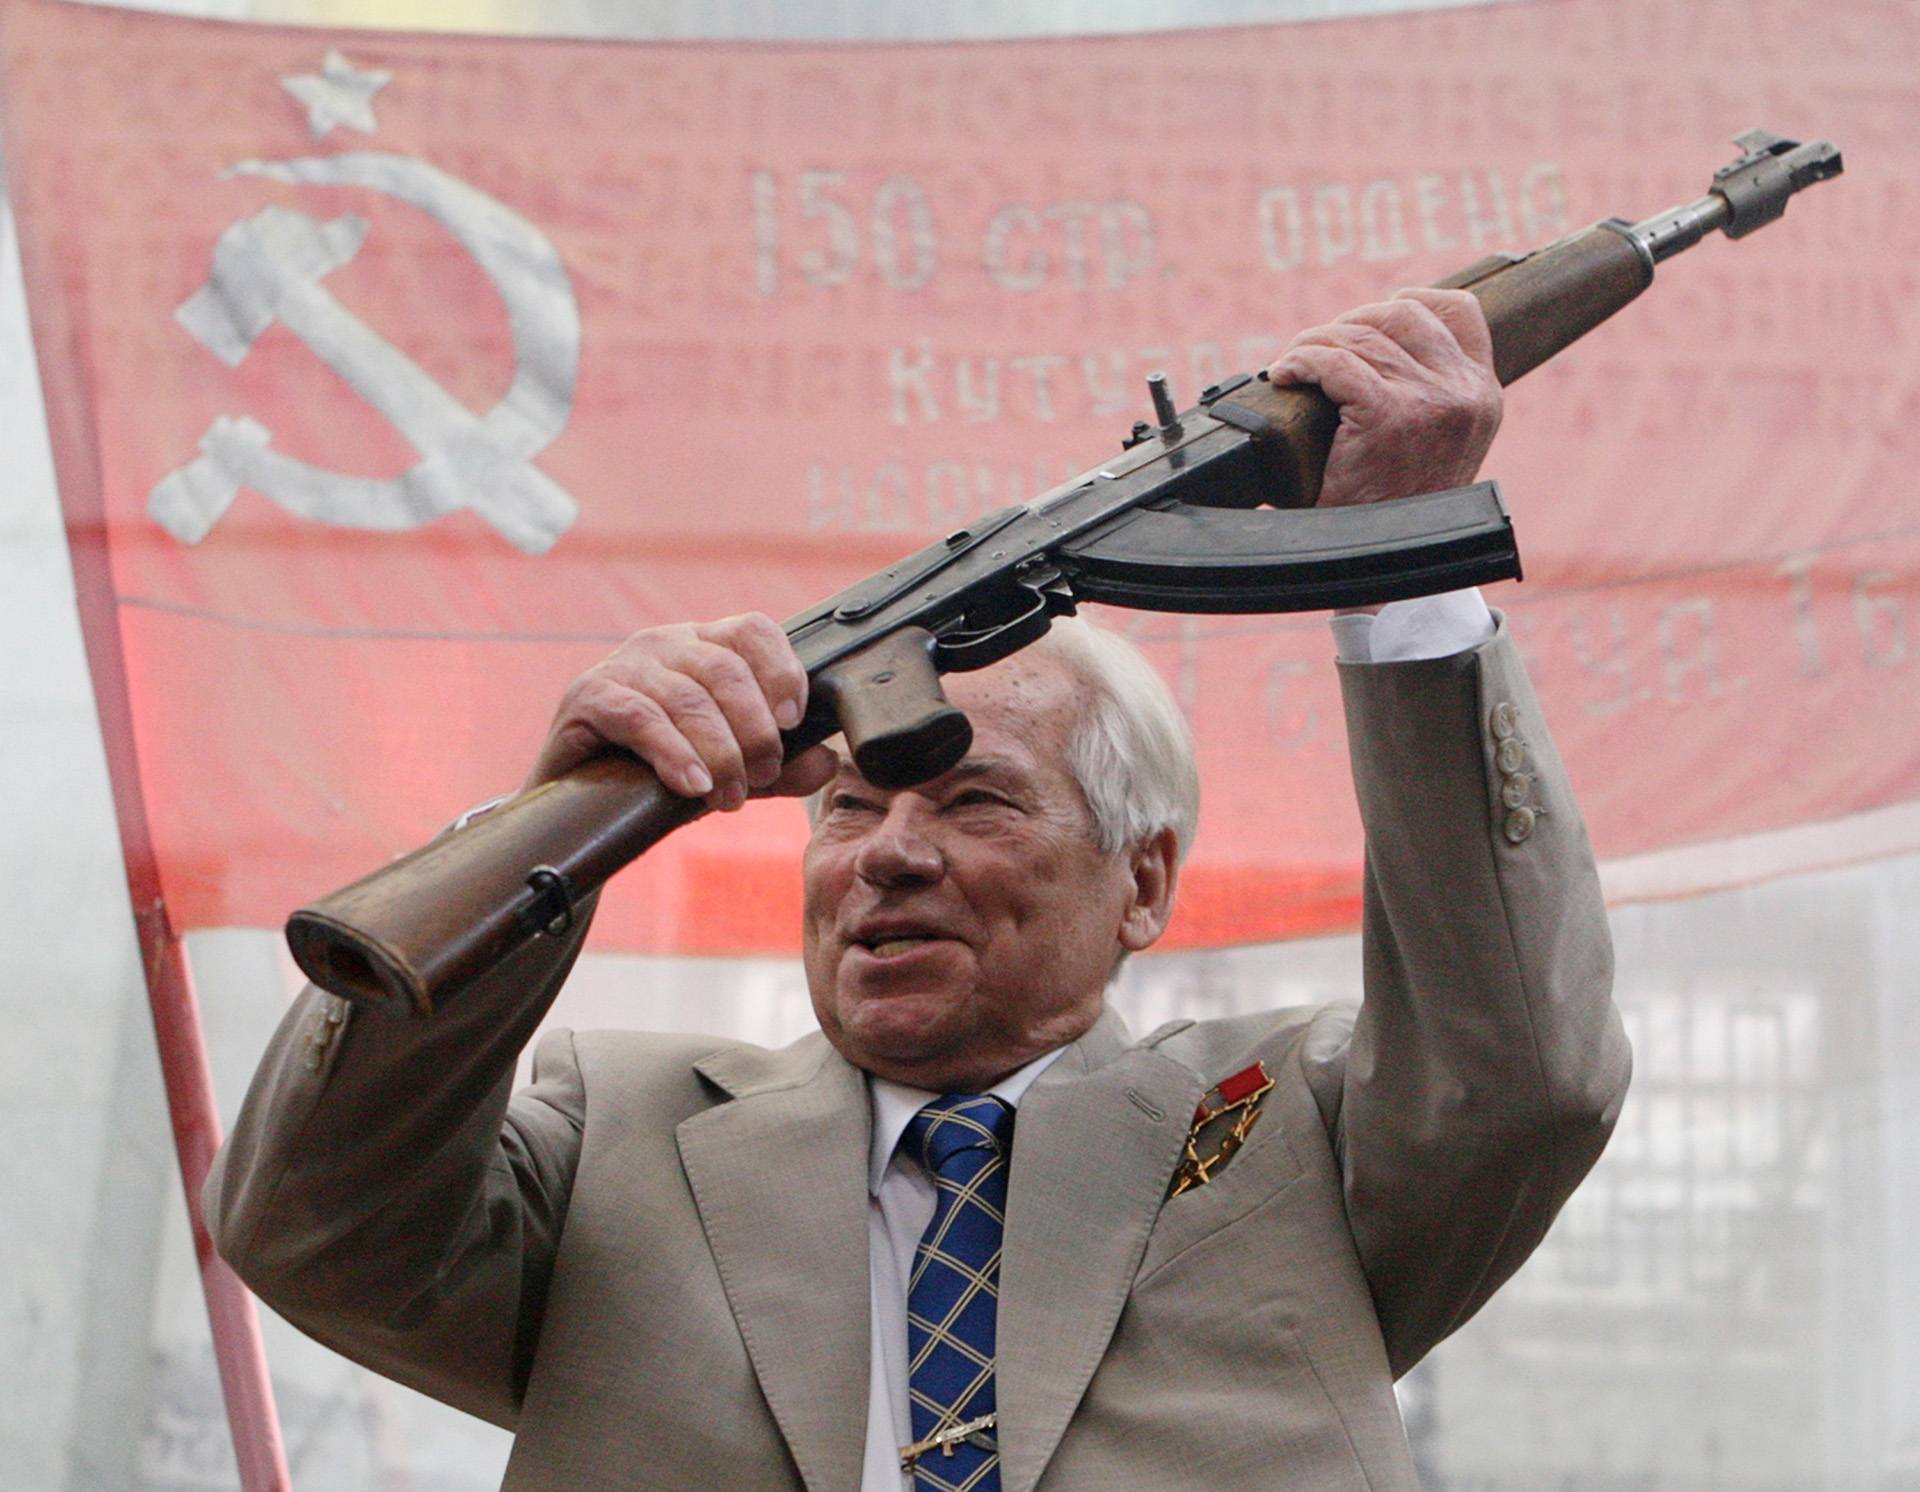 El mayor general Mijaíl Timoféyevich Kalashnikov murió en Izhevsk, Rusia, el 23 de diciembre de 2013. Tenía 94 años (Dima Korotayev/Epsilon/Getty Images)